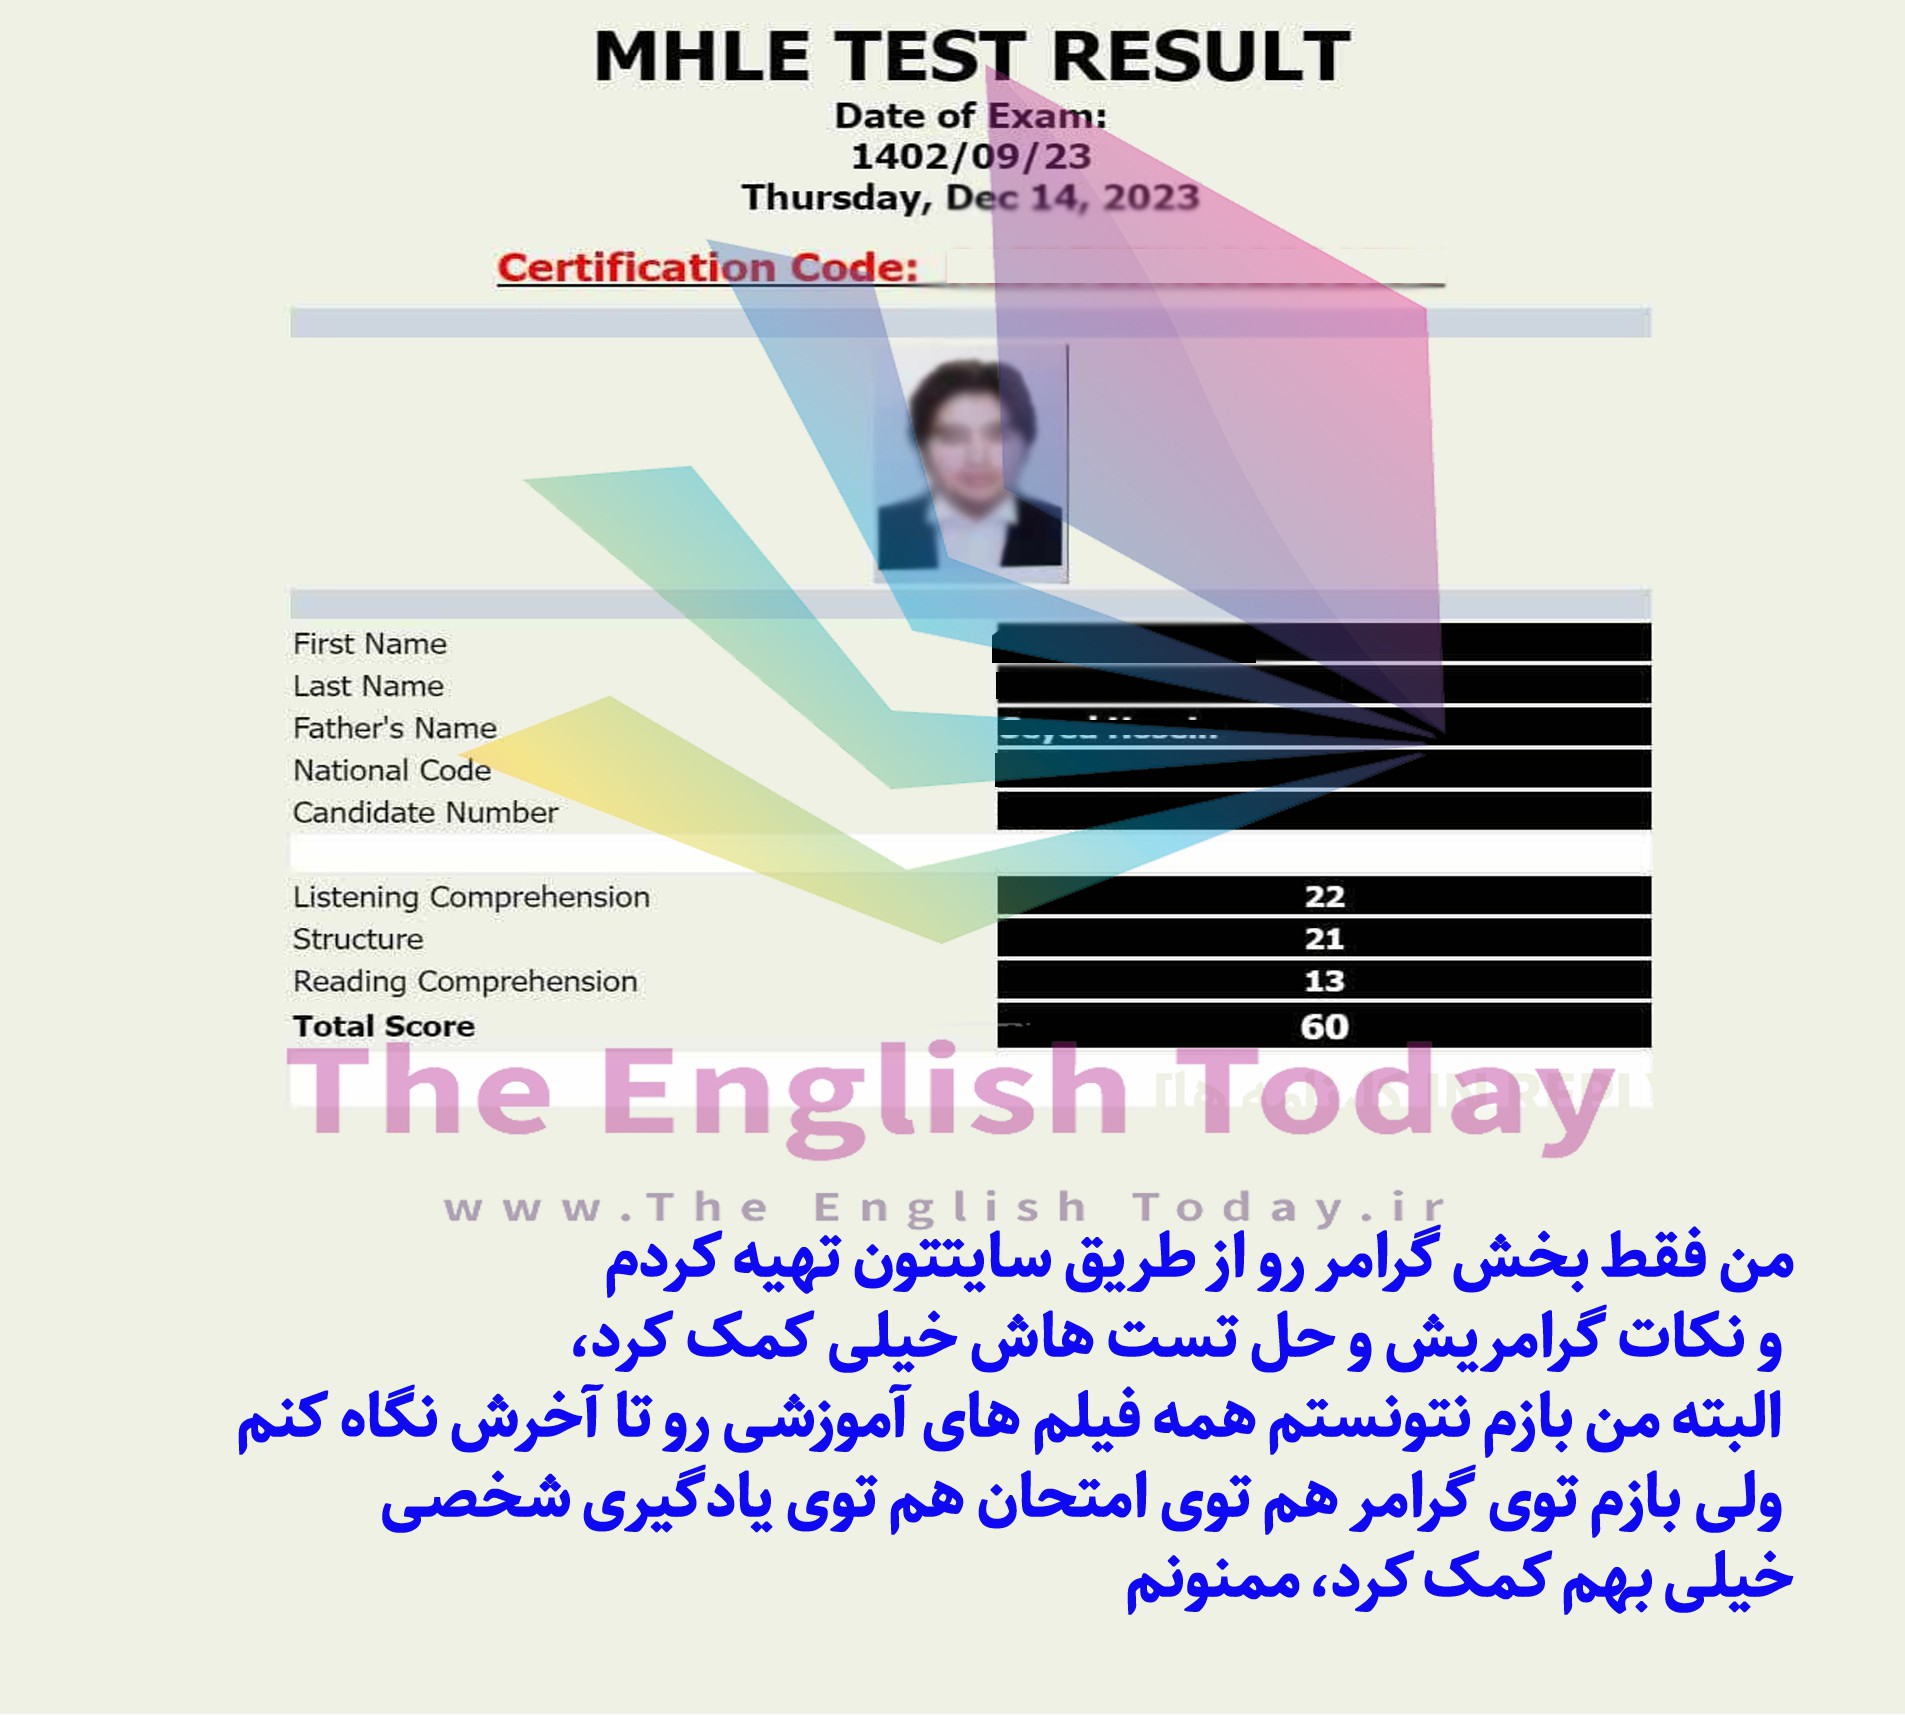 شصت و ششمین دوره جامع آزمون MHLE  Image of شصت و ششمین دوره جامع آزمون MHLE